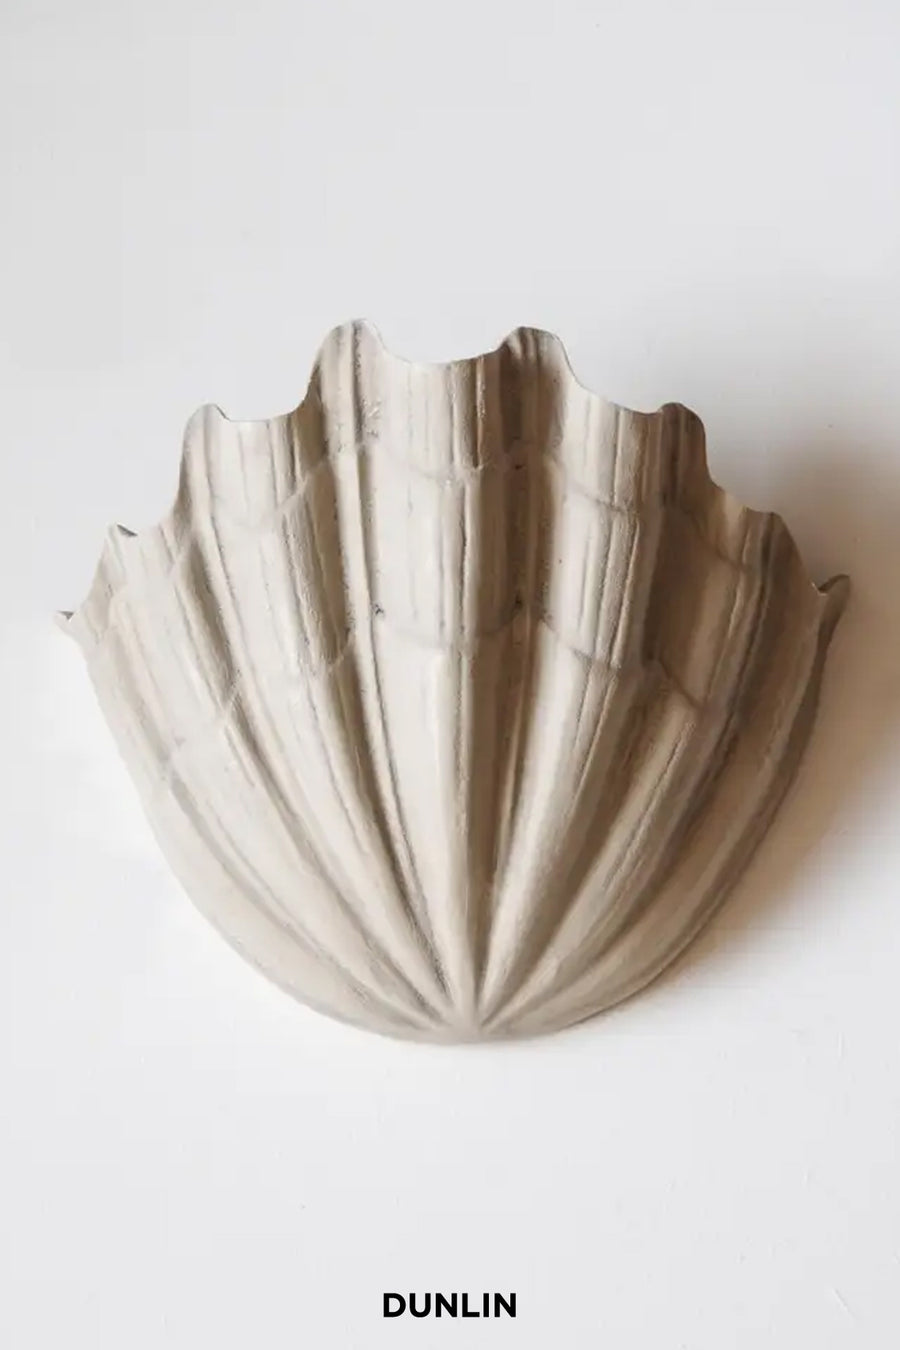 Rose Uniacke Plaster clam up light Dunlin